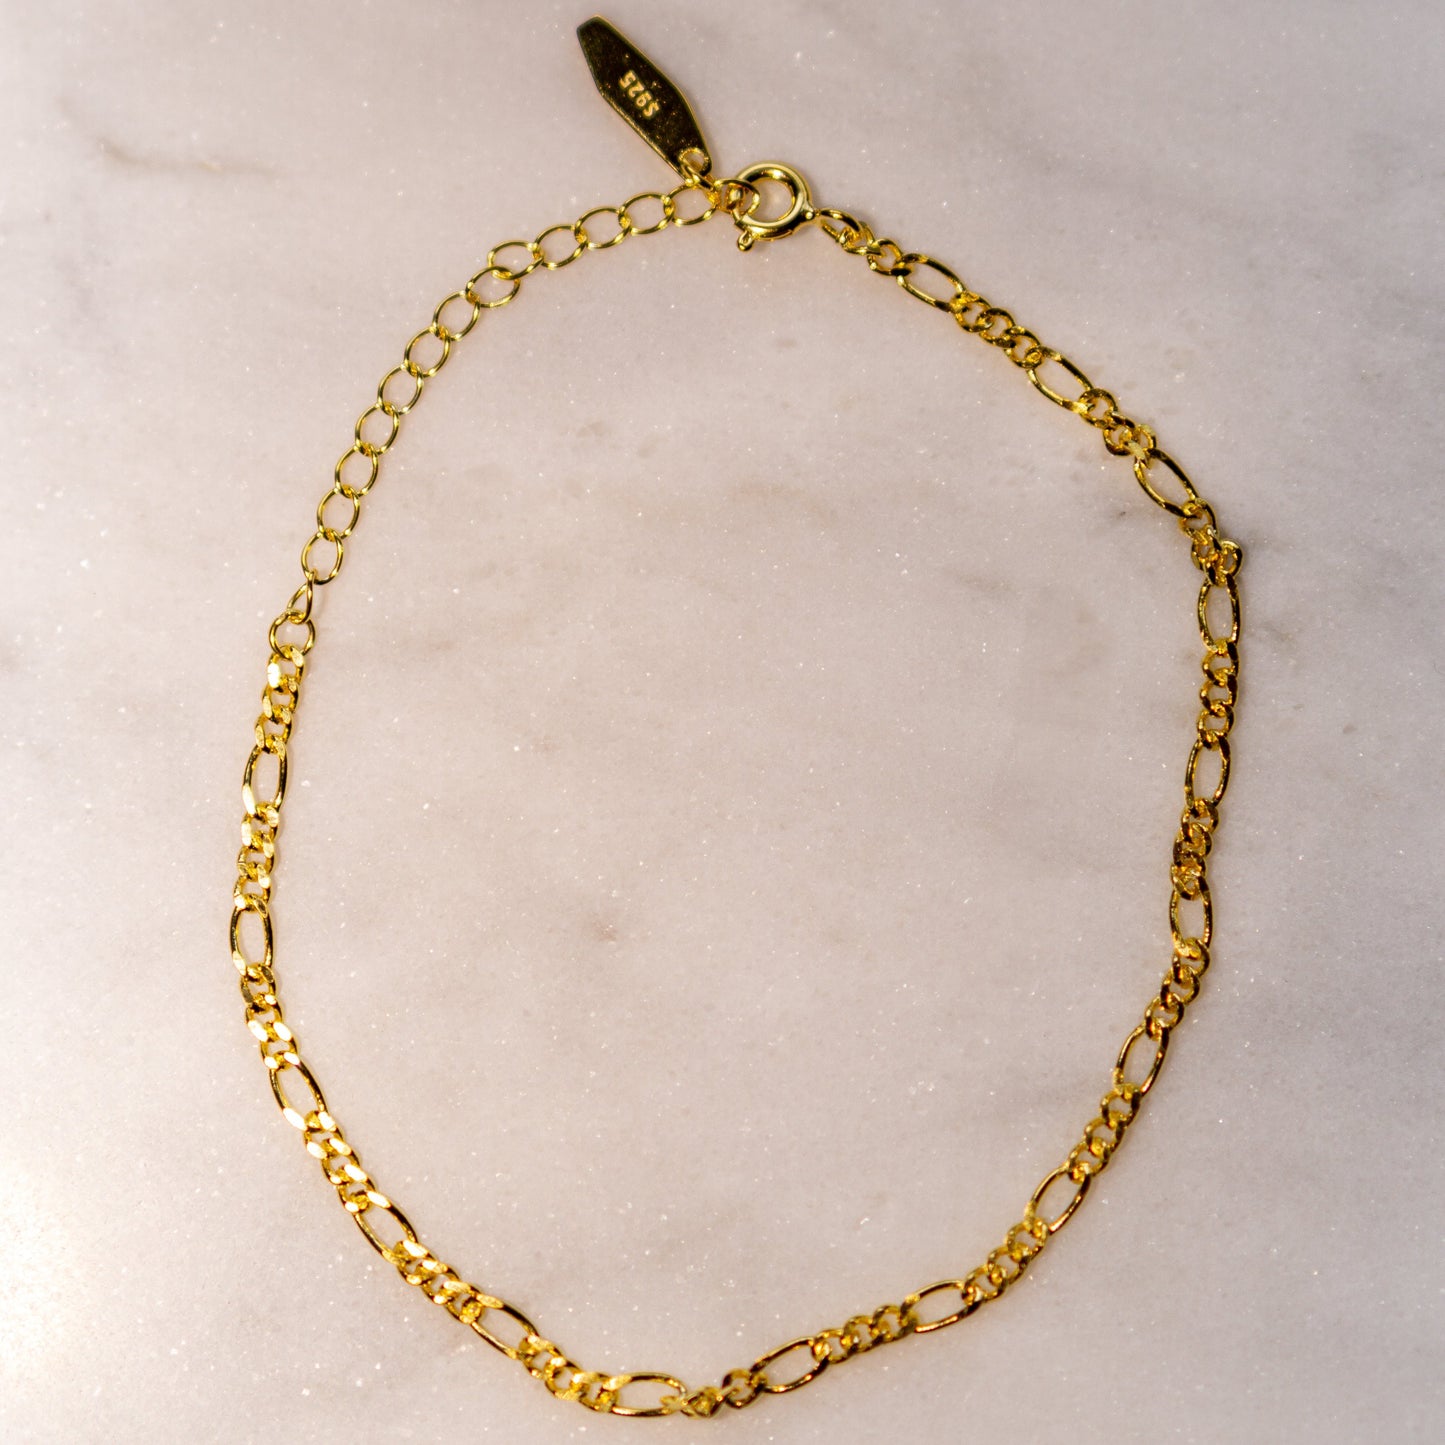 Women's Gold Figaro Bracelets,18K Gold Plated Bracelet. Cute Bracelets. Quality Gold Bracelets. Affordable Gold Bracelets. Water Proof Jewelry. Water Proof Gold Plated Jewelry. Water Proof Bracelets. 